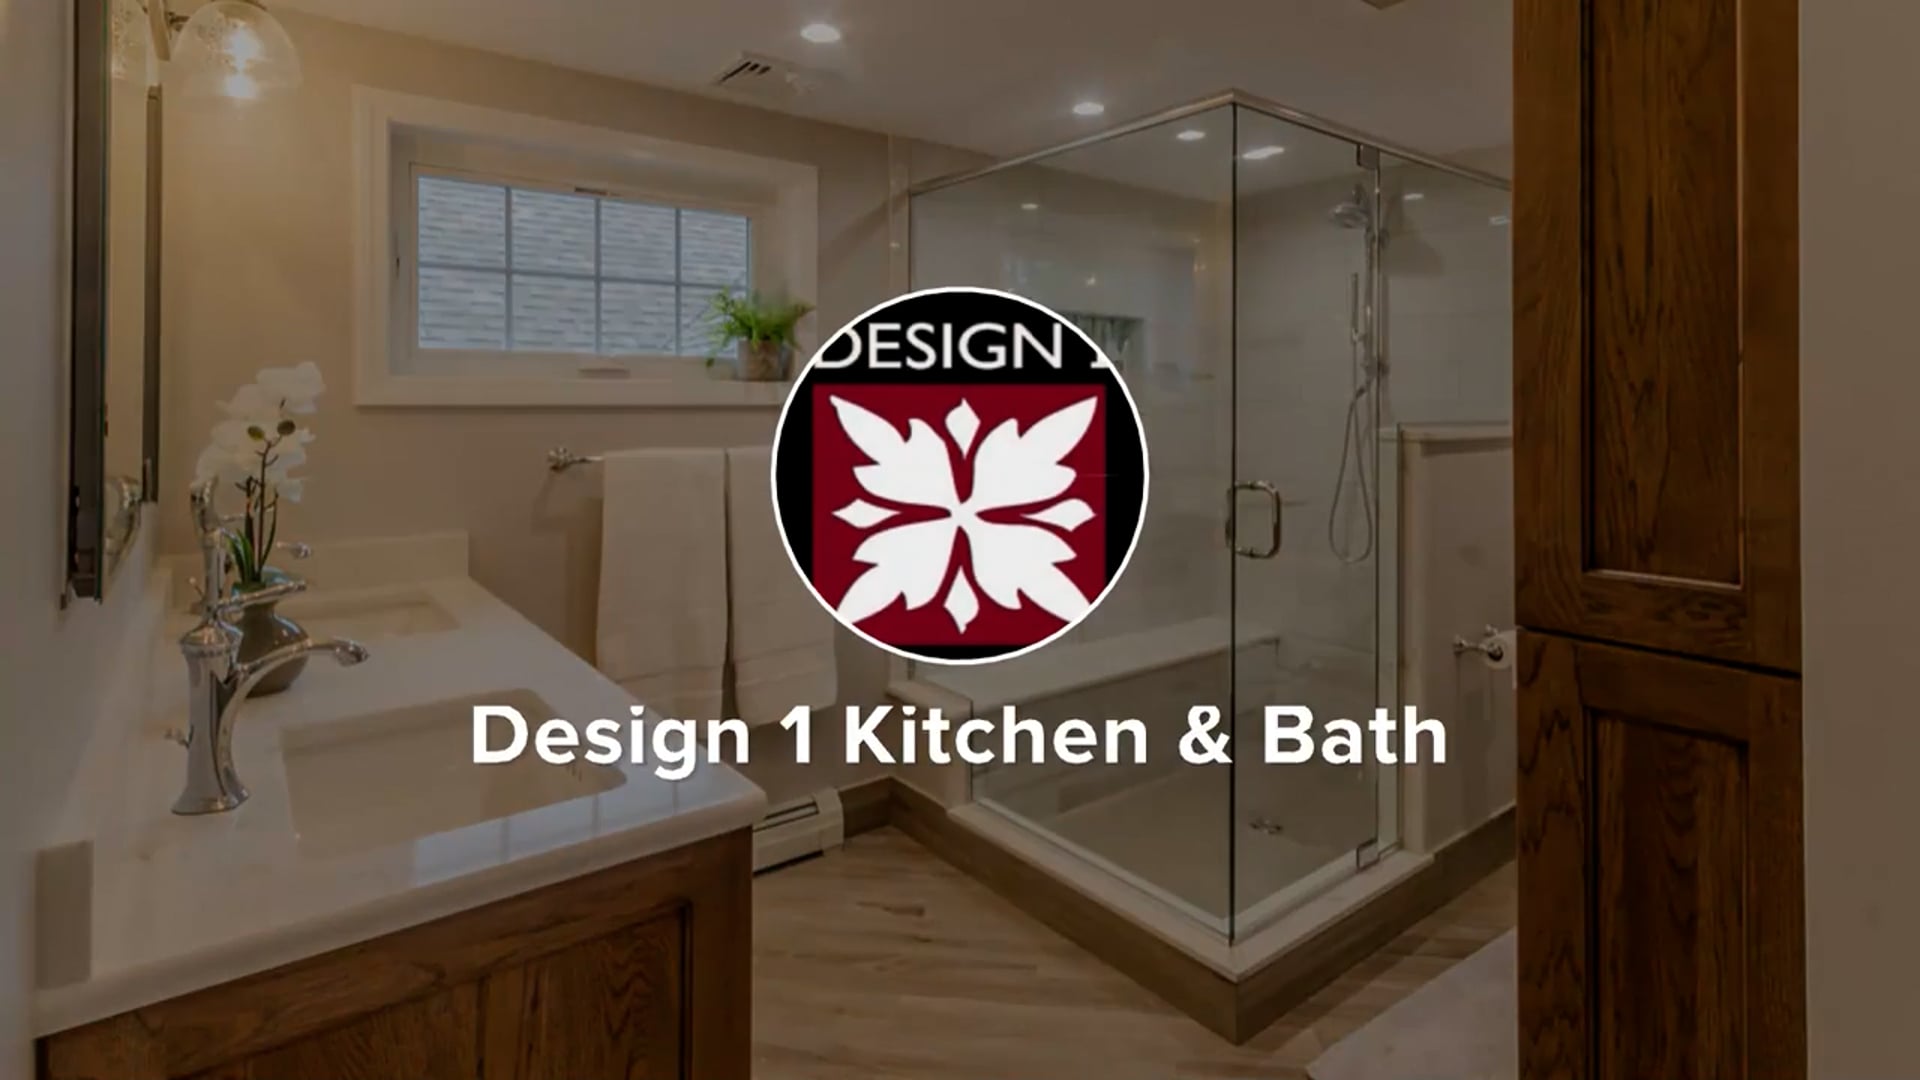 Traditional Gourmet Kitchen - Rhode Kitchen & Bath Design Build